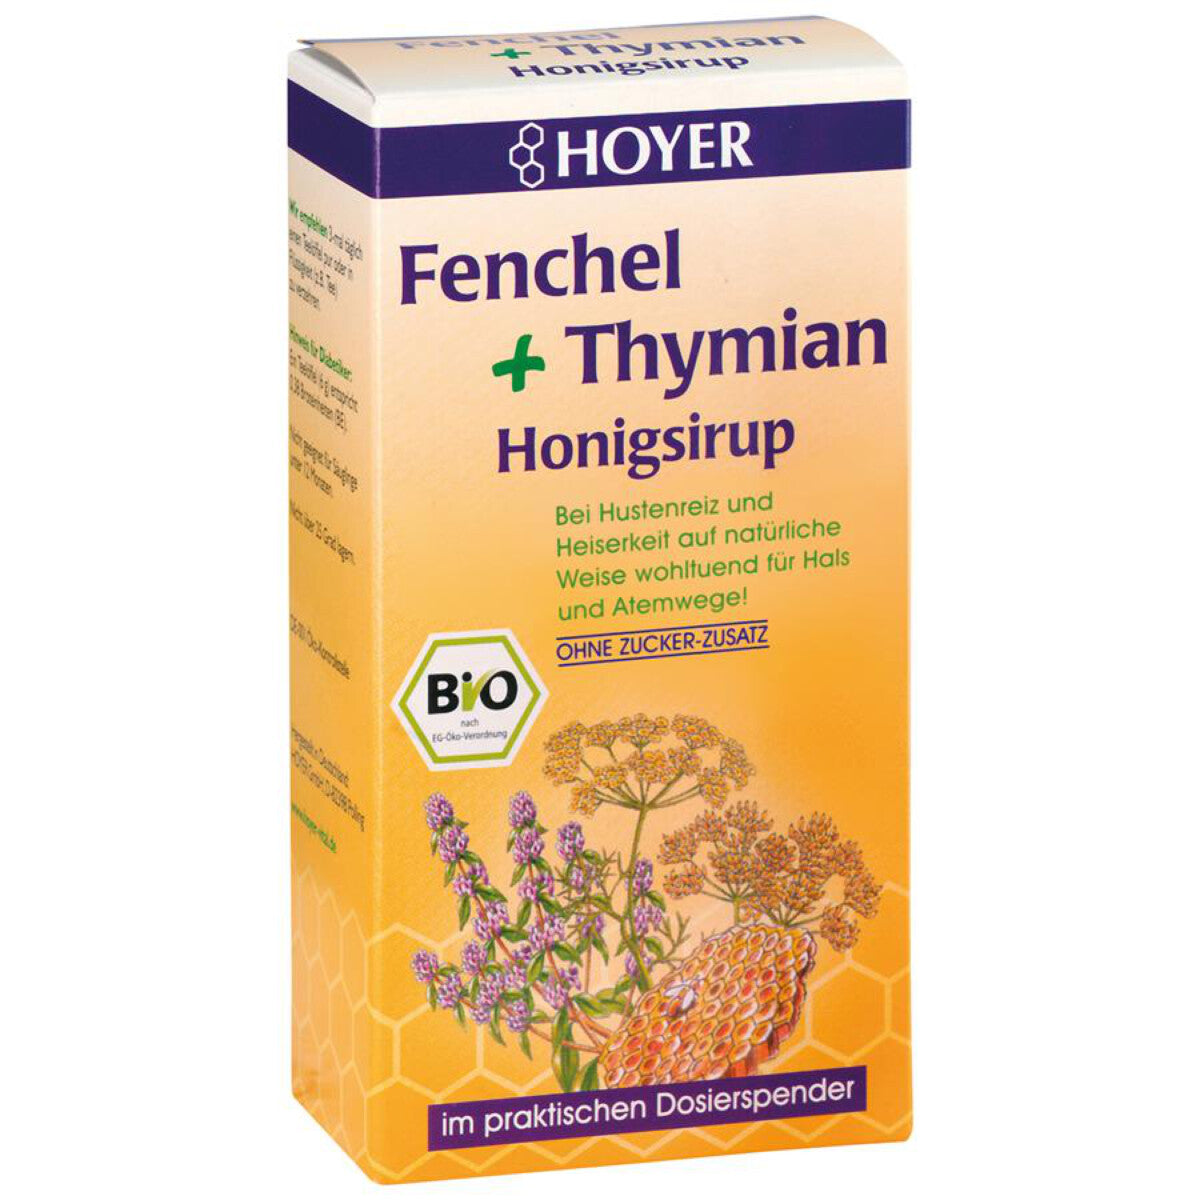 HOYER Fenchel & Thymian Honigsirup - 250 g